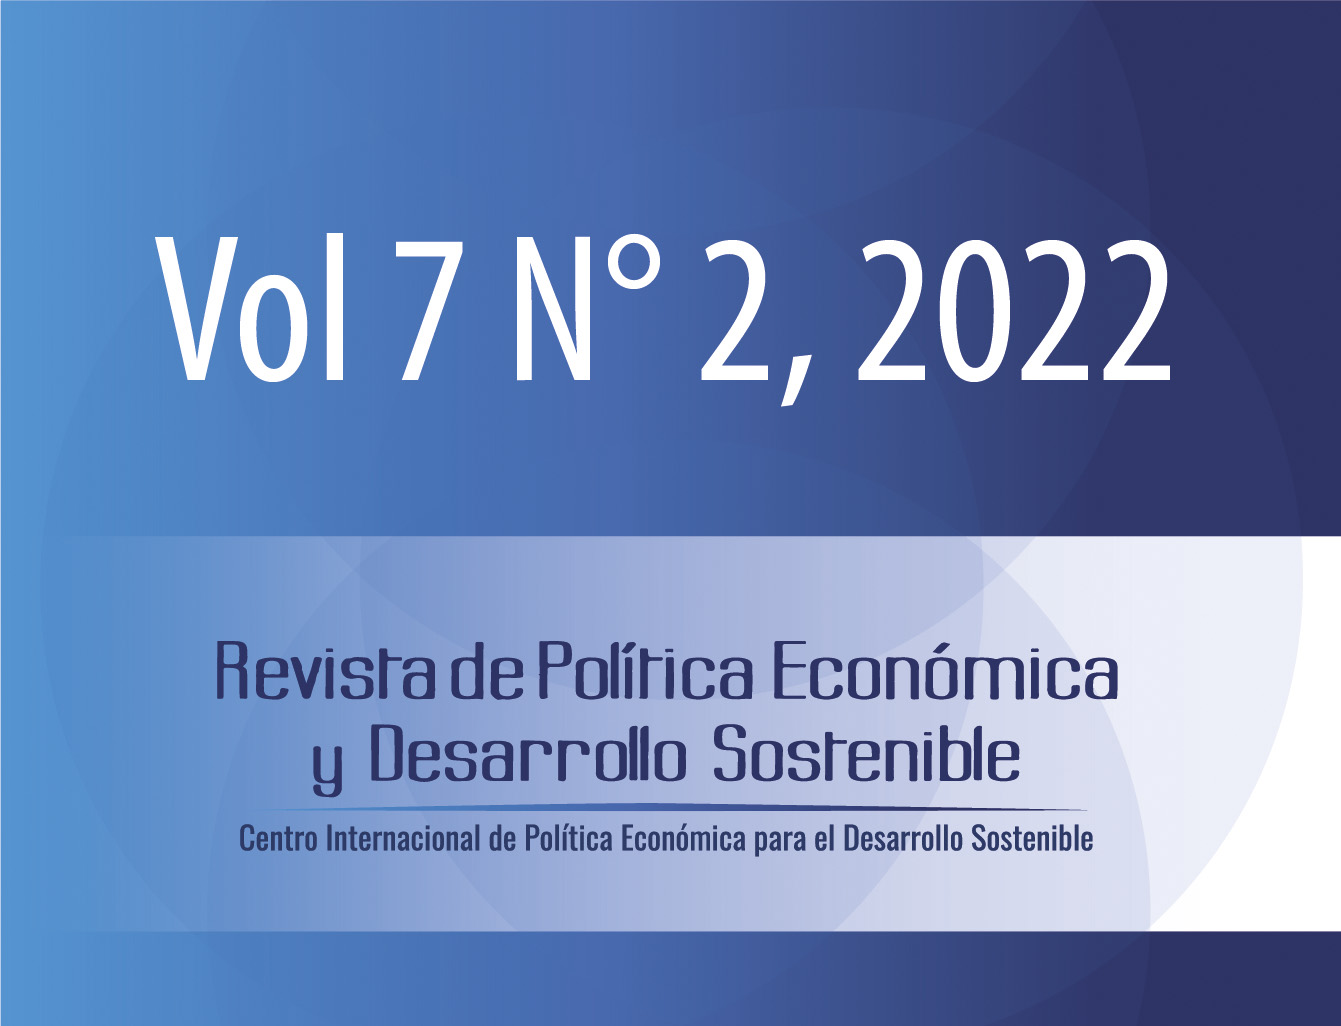 					Ver Vol. 7 Núm. 2 (2022): Revista Política Económica y Desarrollo Sostenible (ENERO-JUNIO)
				